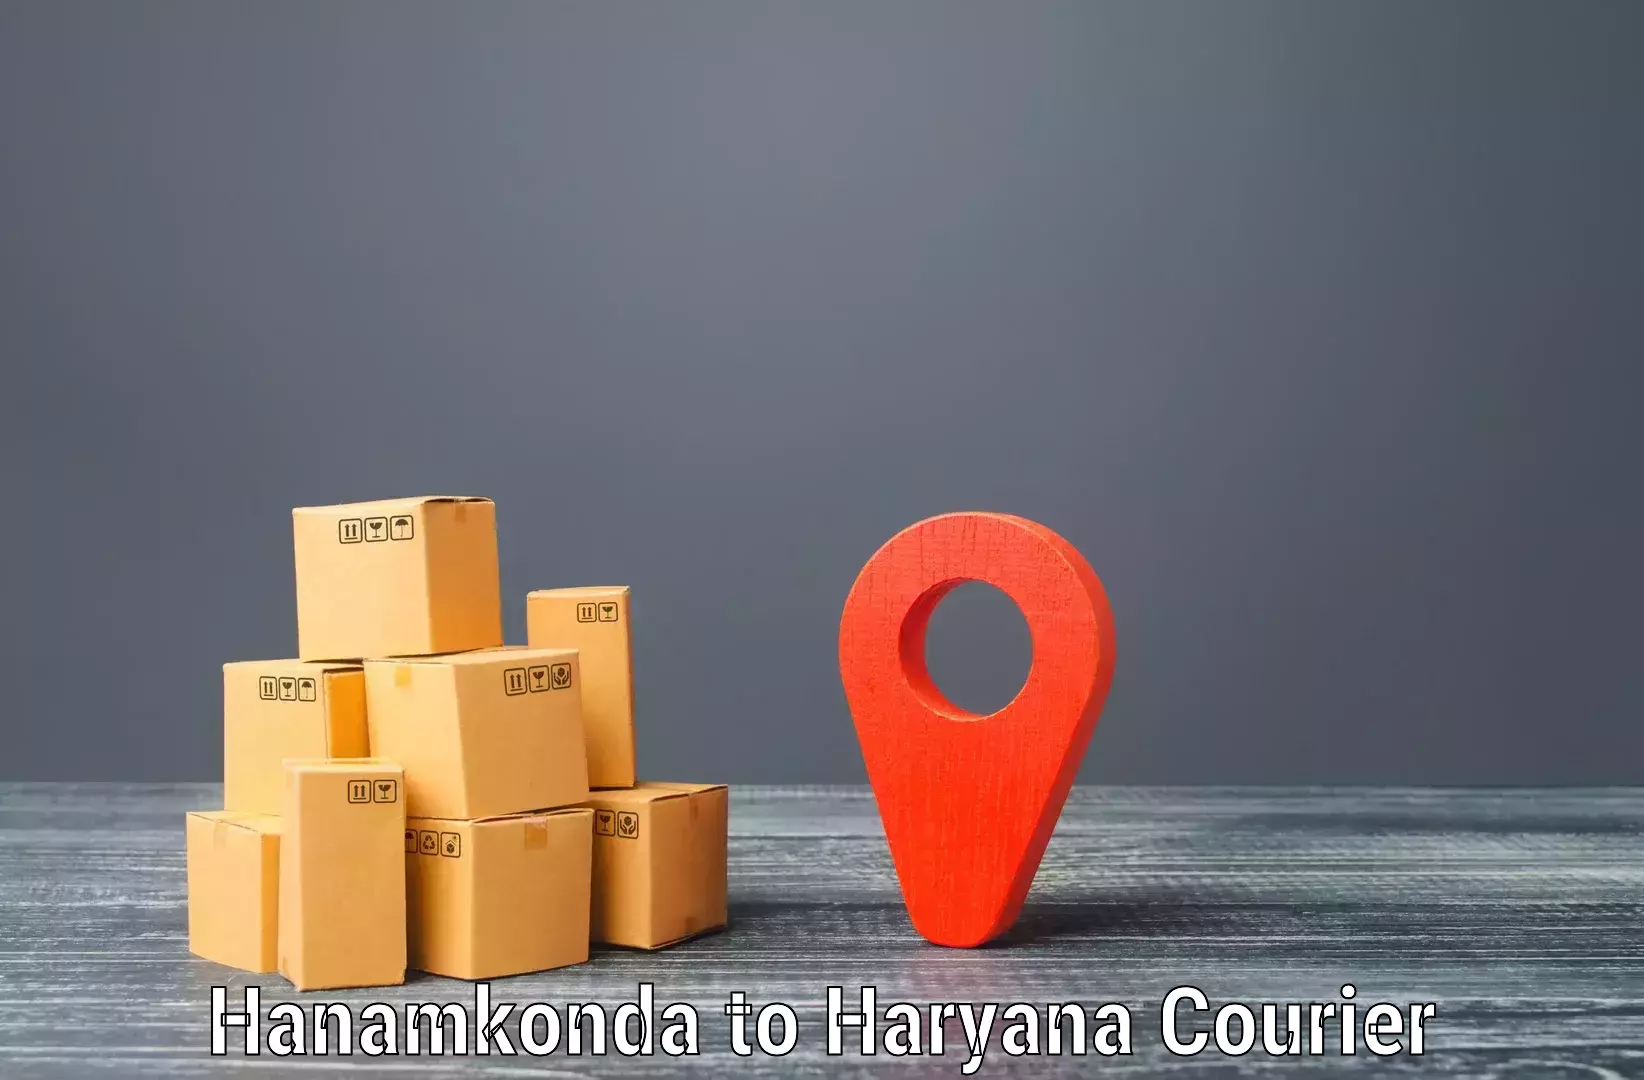 Bulk shipment Hanamkonda to Loharu